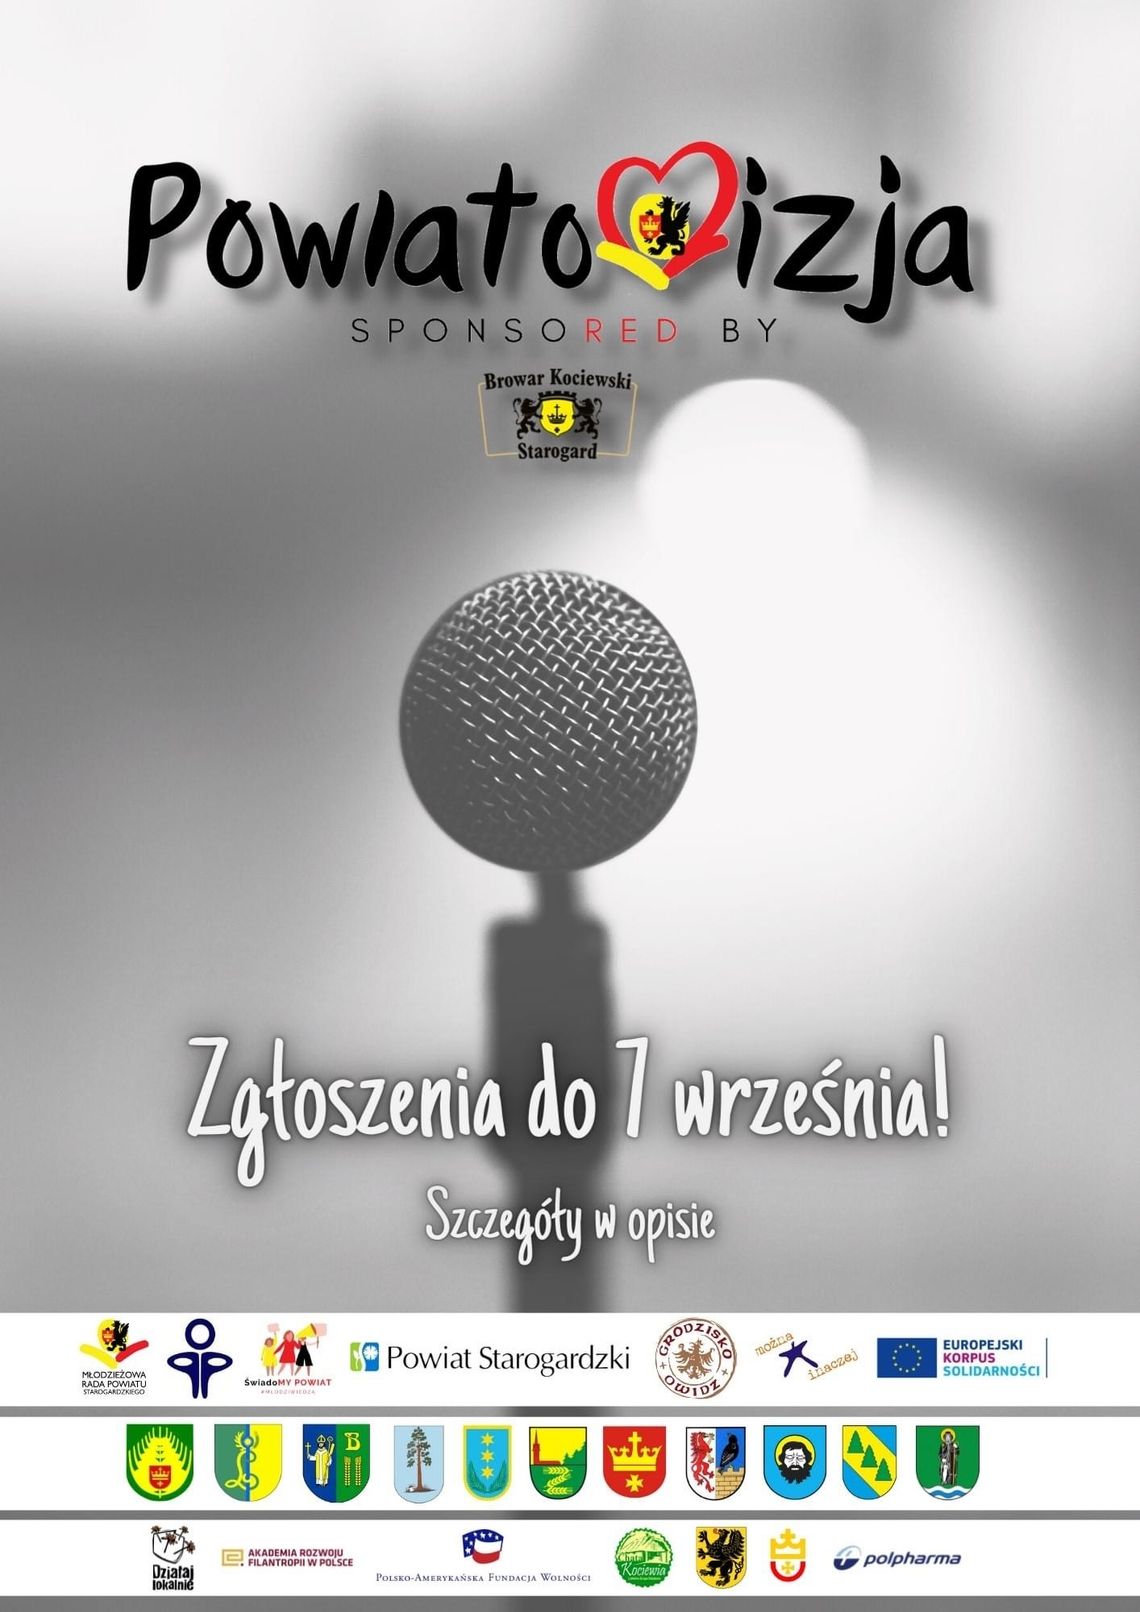 Konkurs muzyczny "Powiatowizja"! Weź udział i reprezentuj swoją gminę!